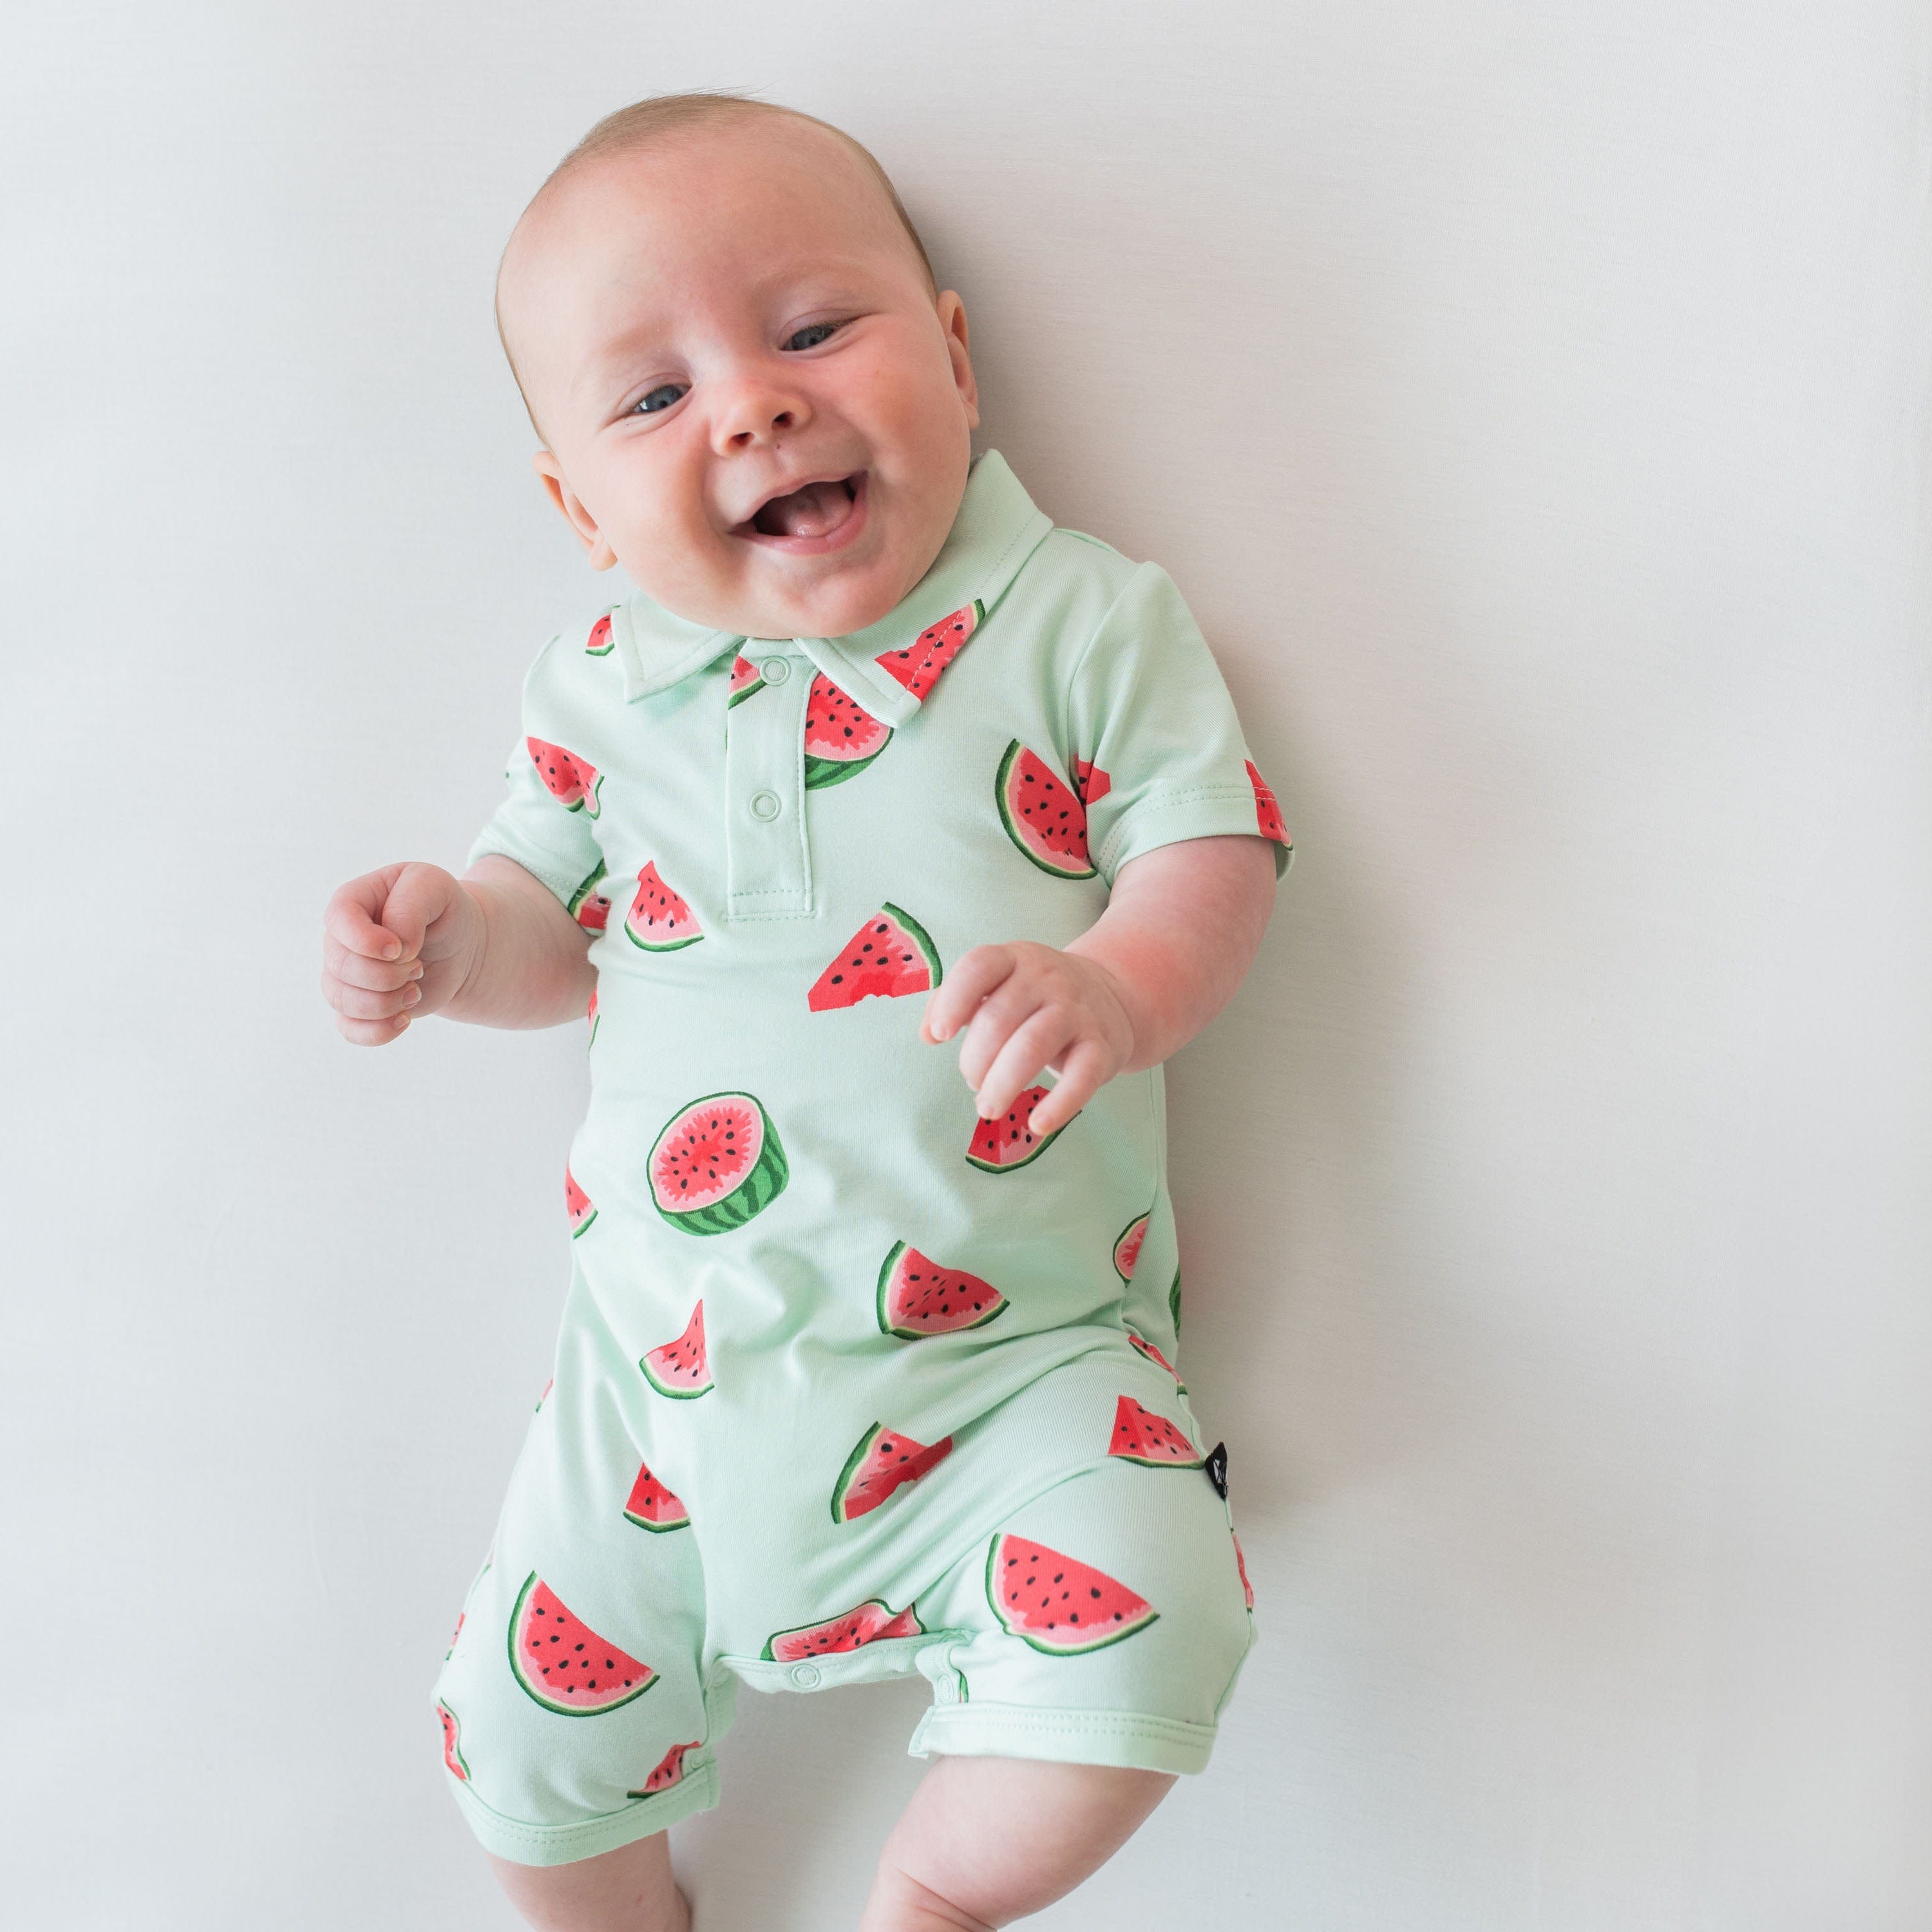 Kyte Baby Polo Short All Polo Shortall in Watermelon